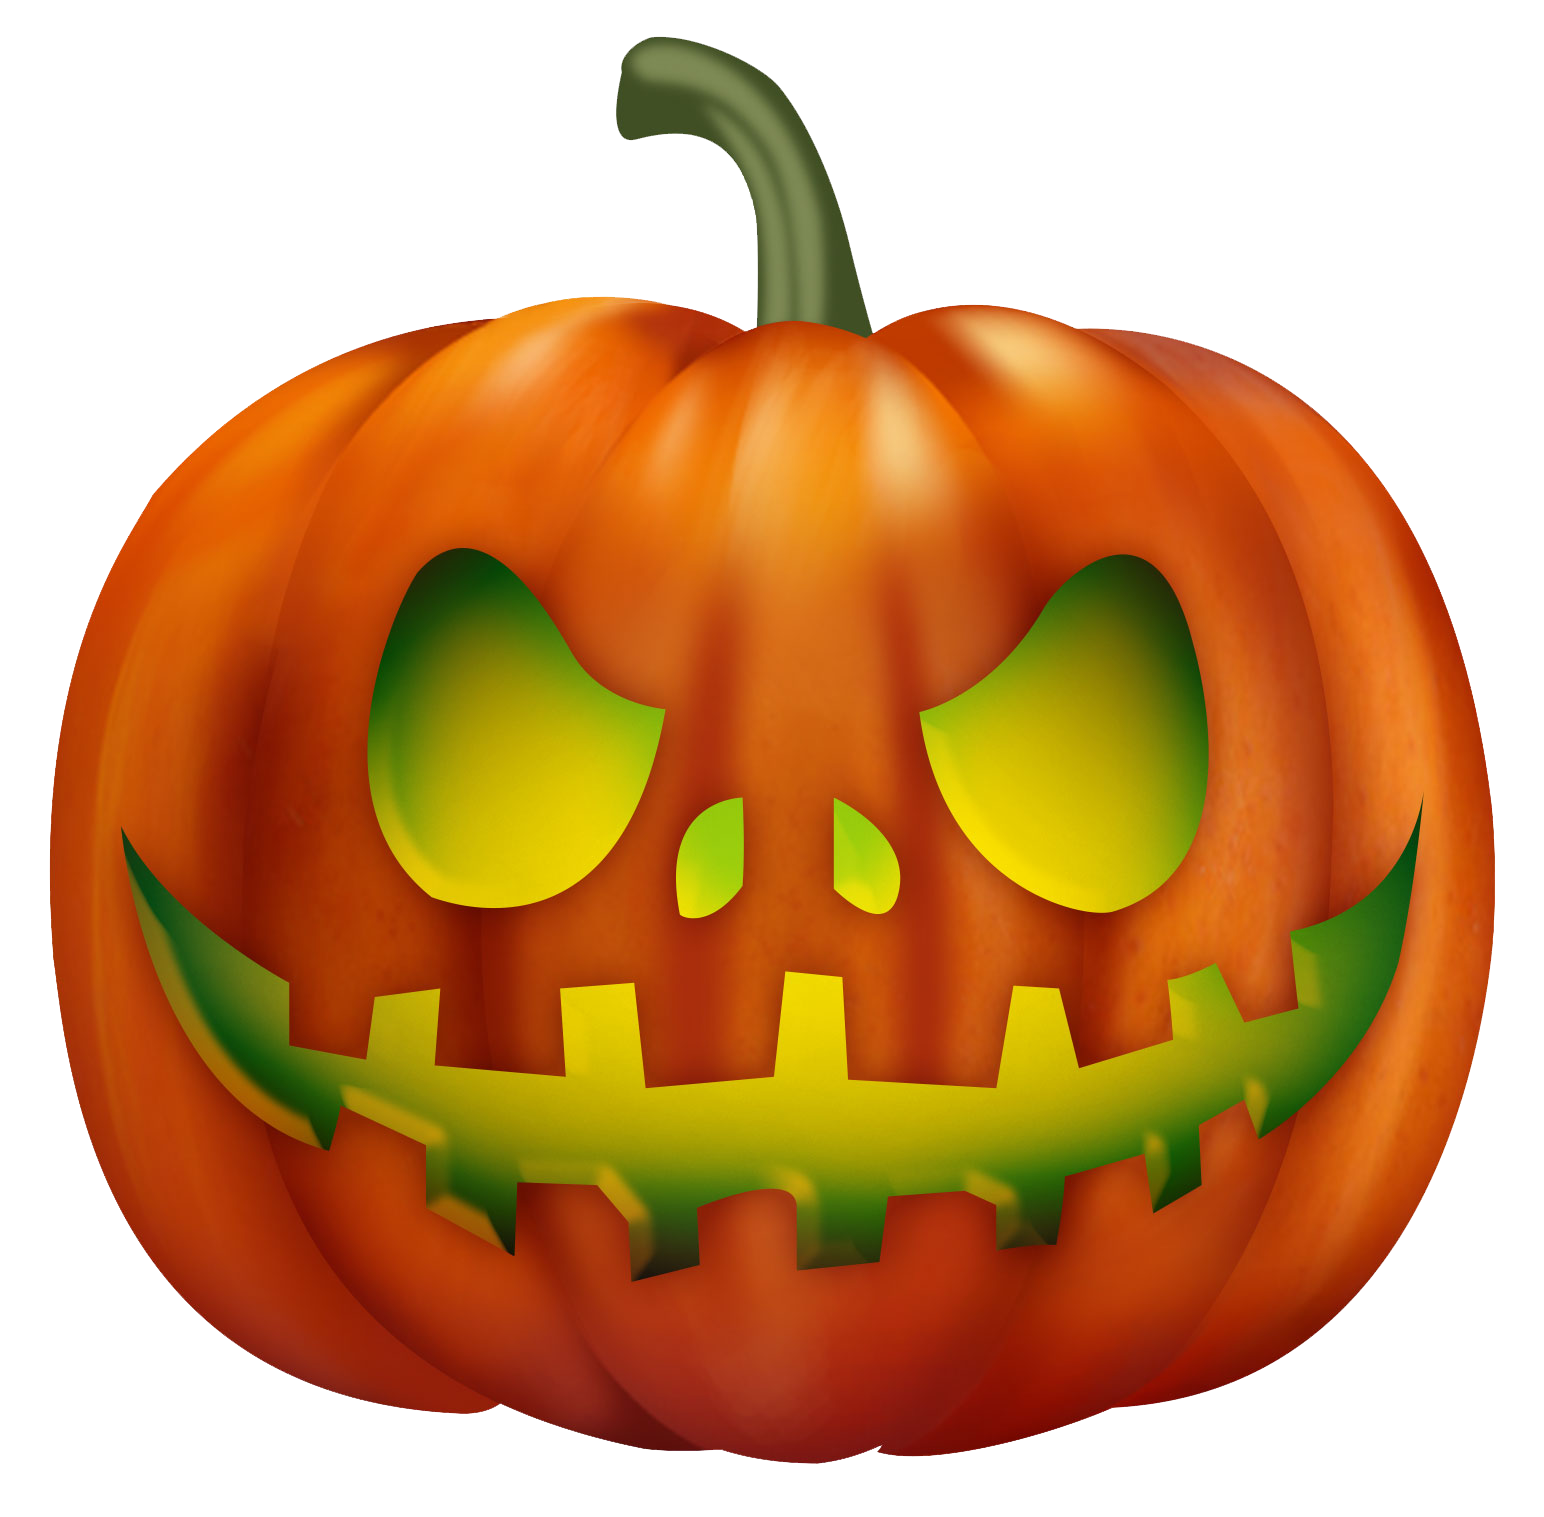 Jack-O’-Lantern Carved Pumpkin Transparent Background PNG